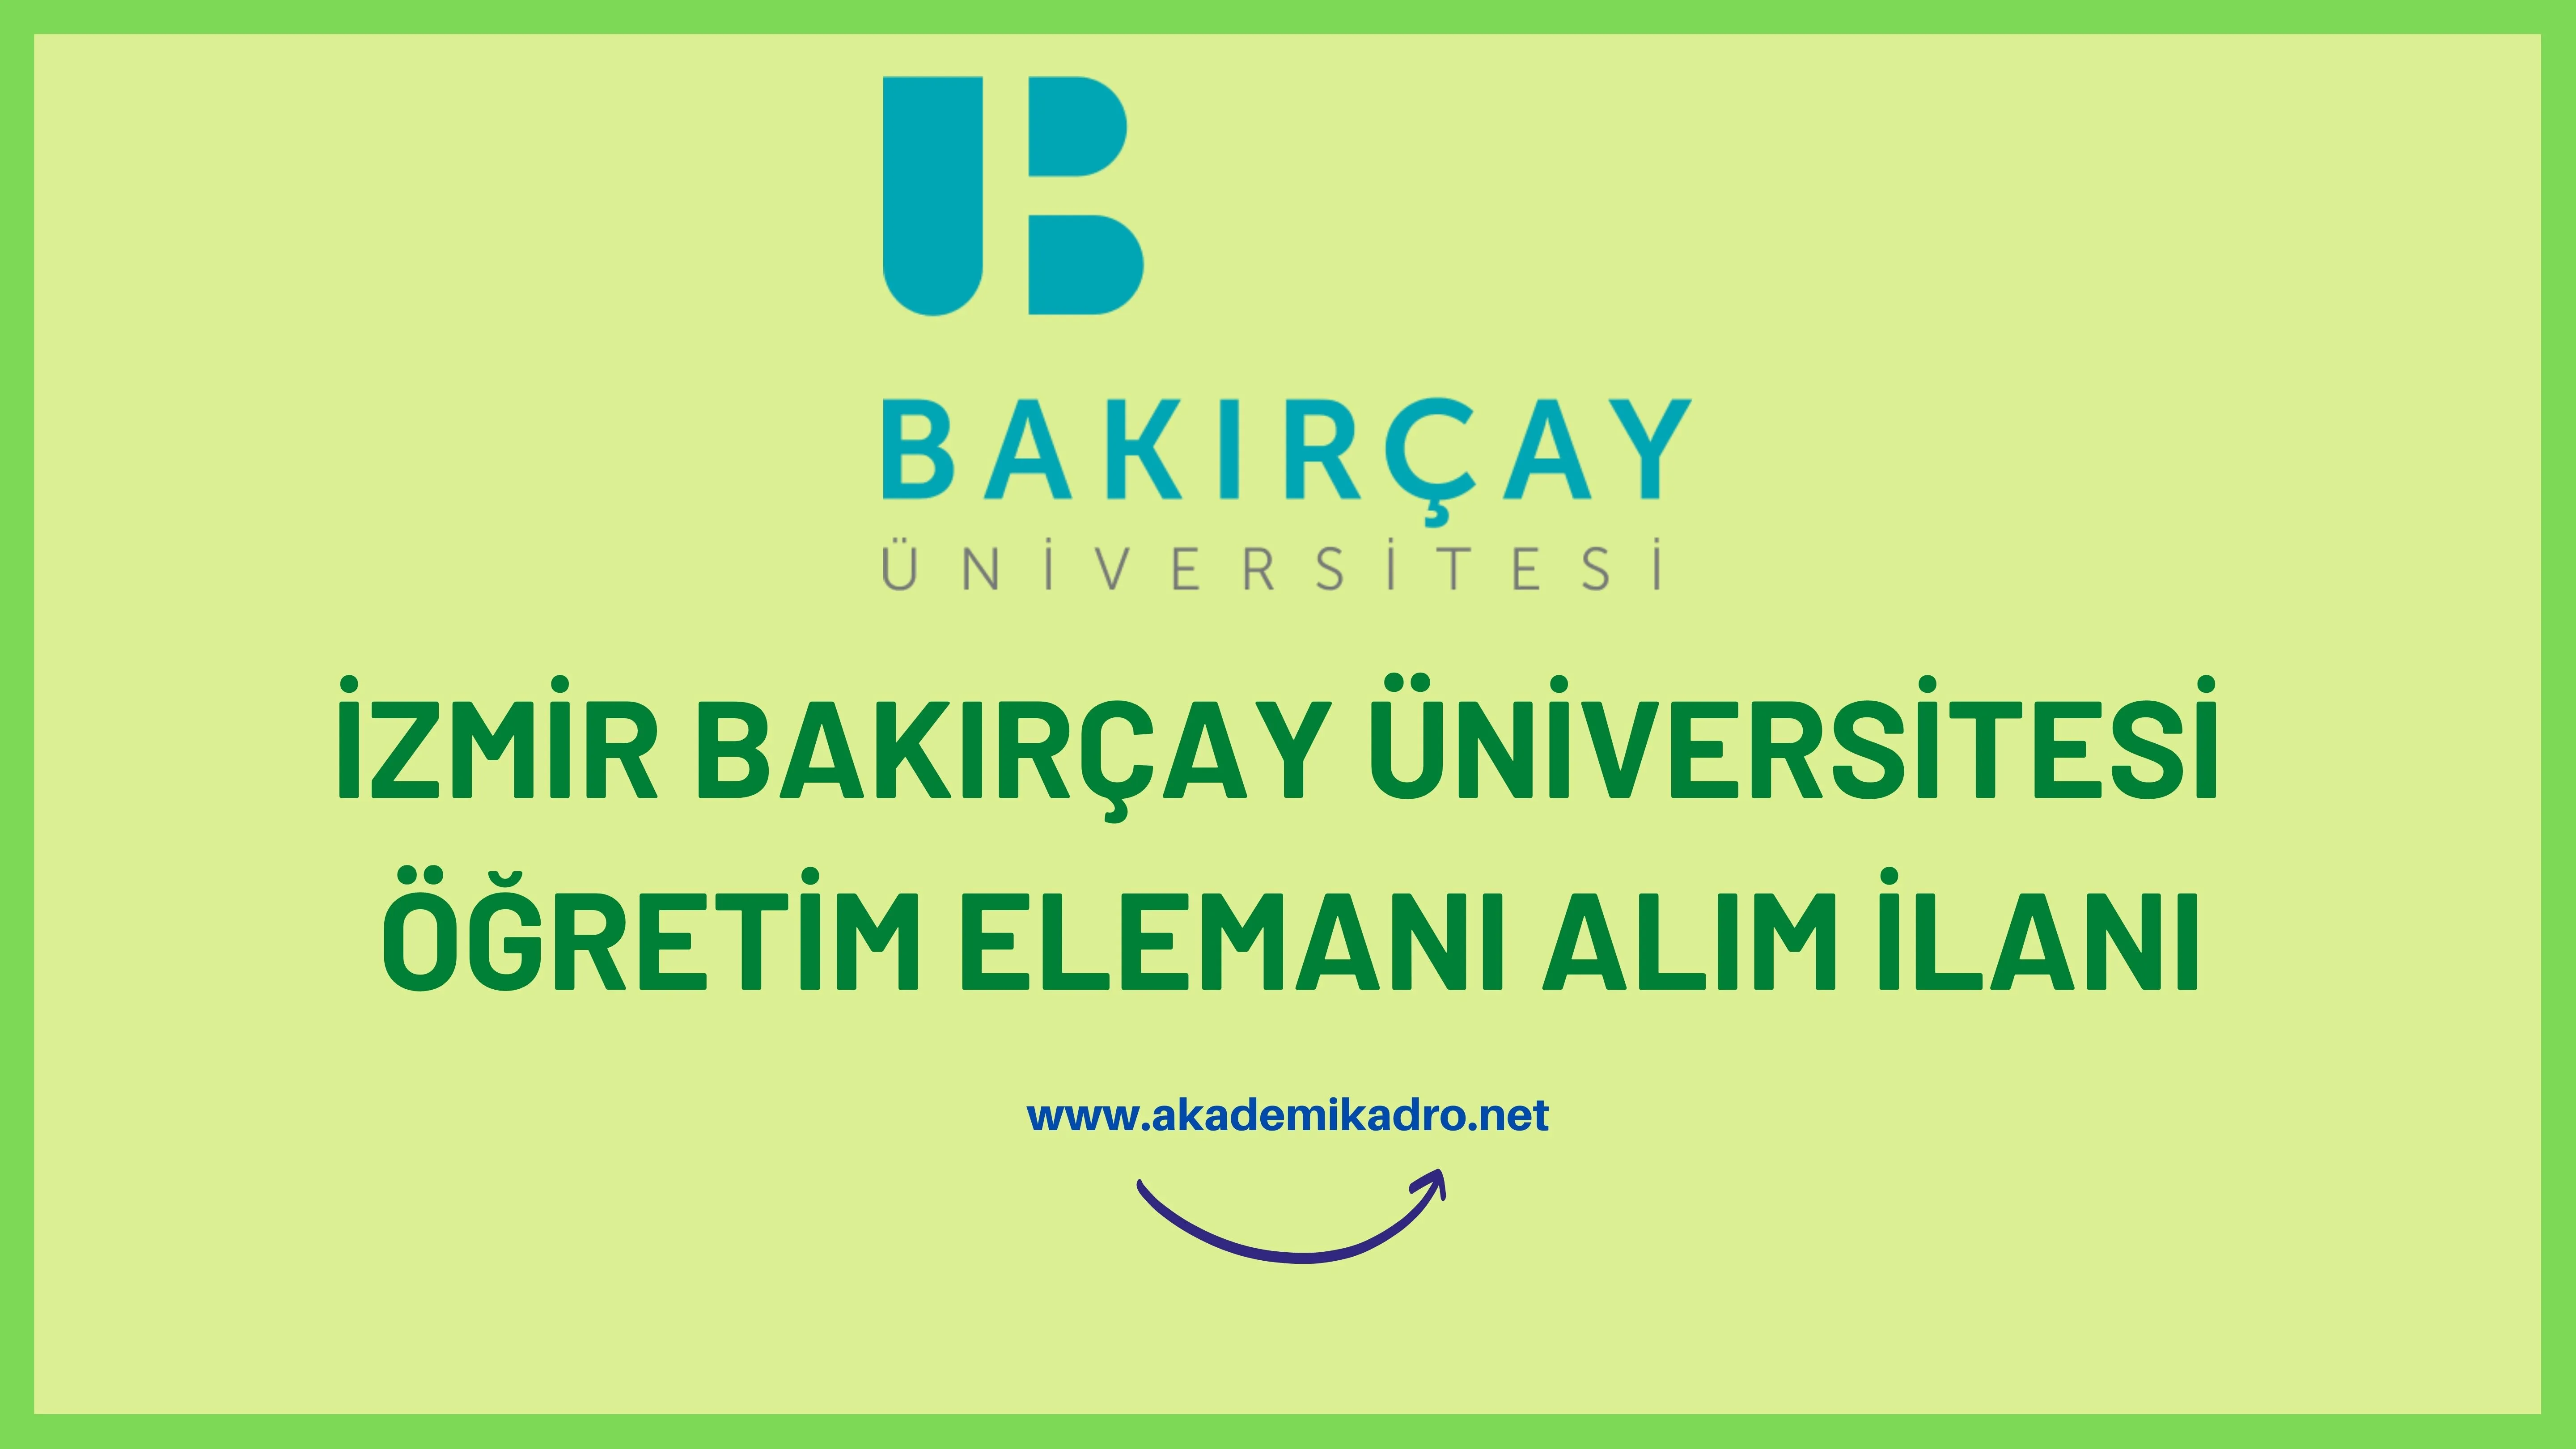 İzmir Bakırçay Üniversitesi 4 Öğretim görevlisi, 7 Araştırma görevlisi ve 5 Öğretim üyesi alacak.